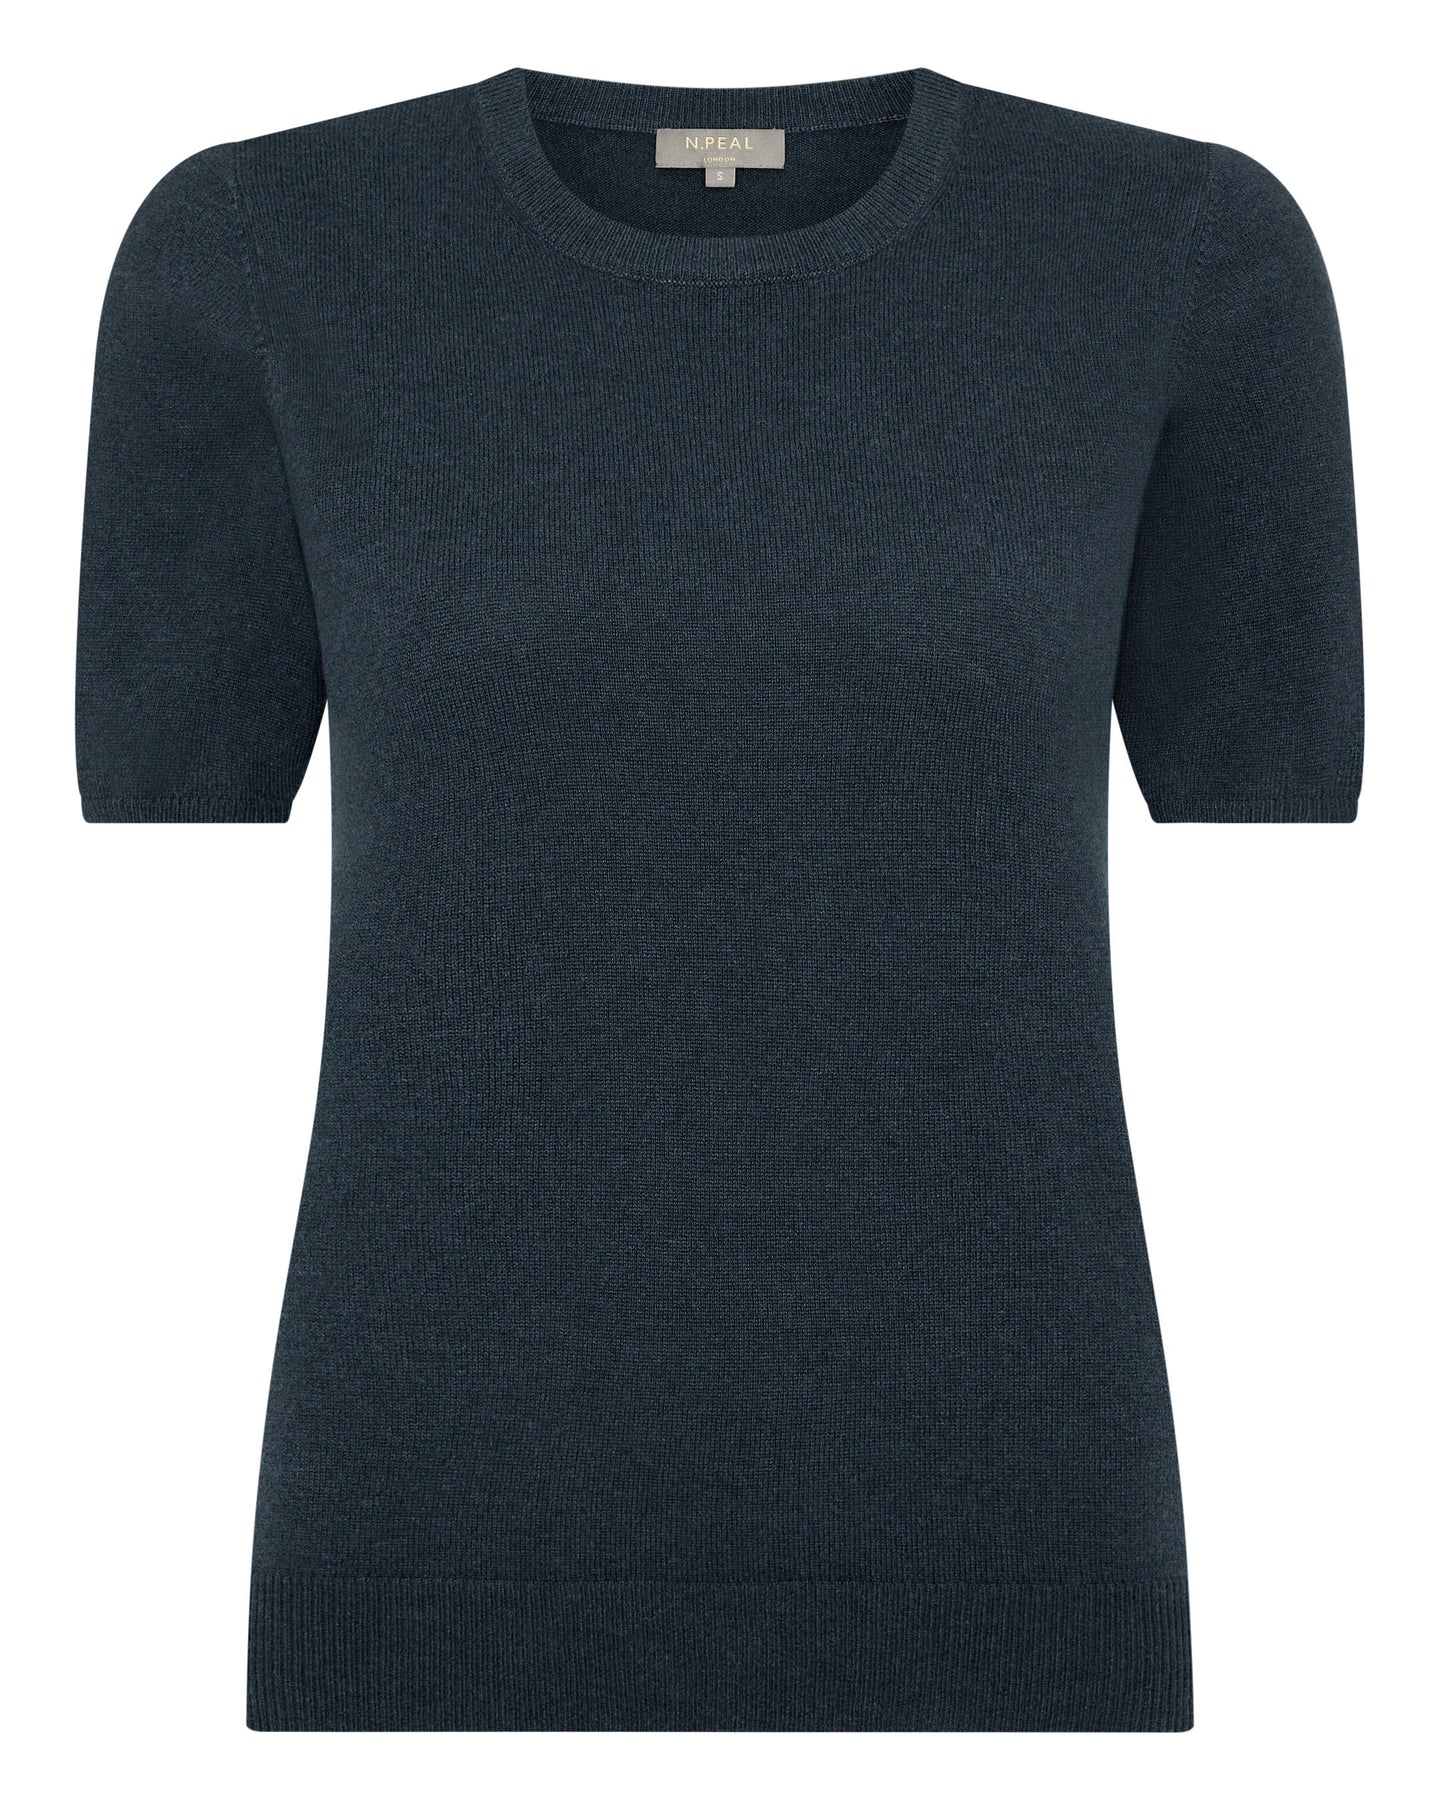 N.Peal Women's Round Neck Cashmere T Shirt Grigio Blue